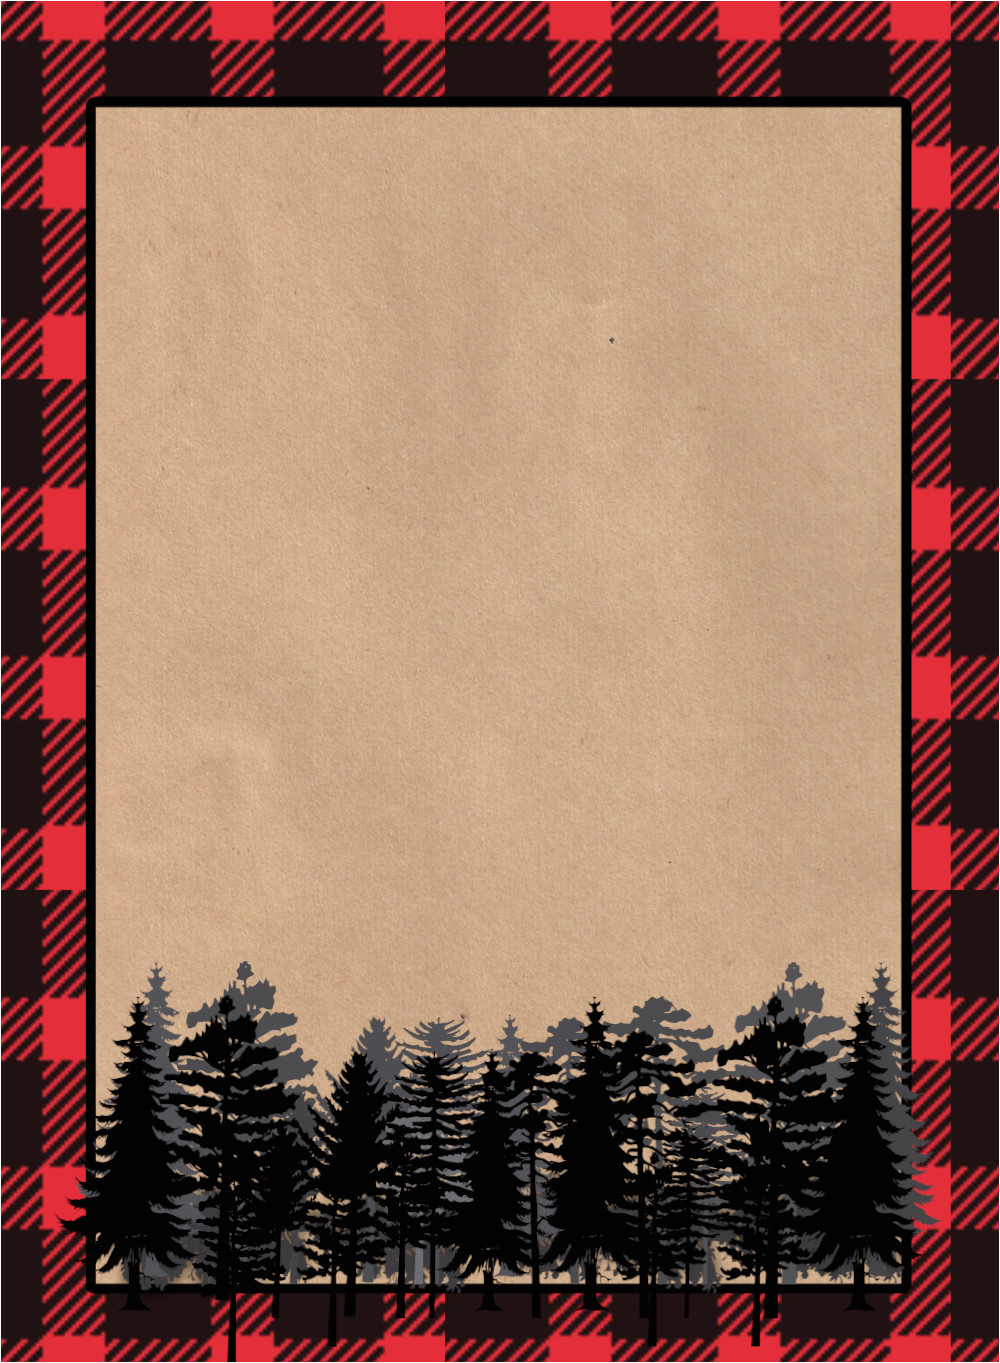 lumberjack invitation free printable